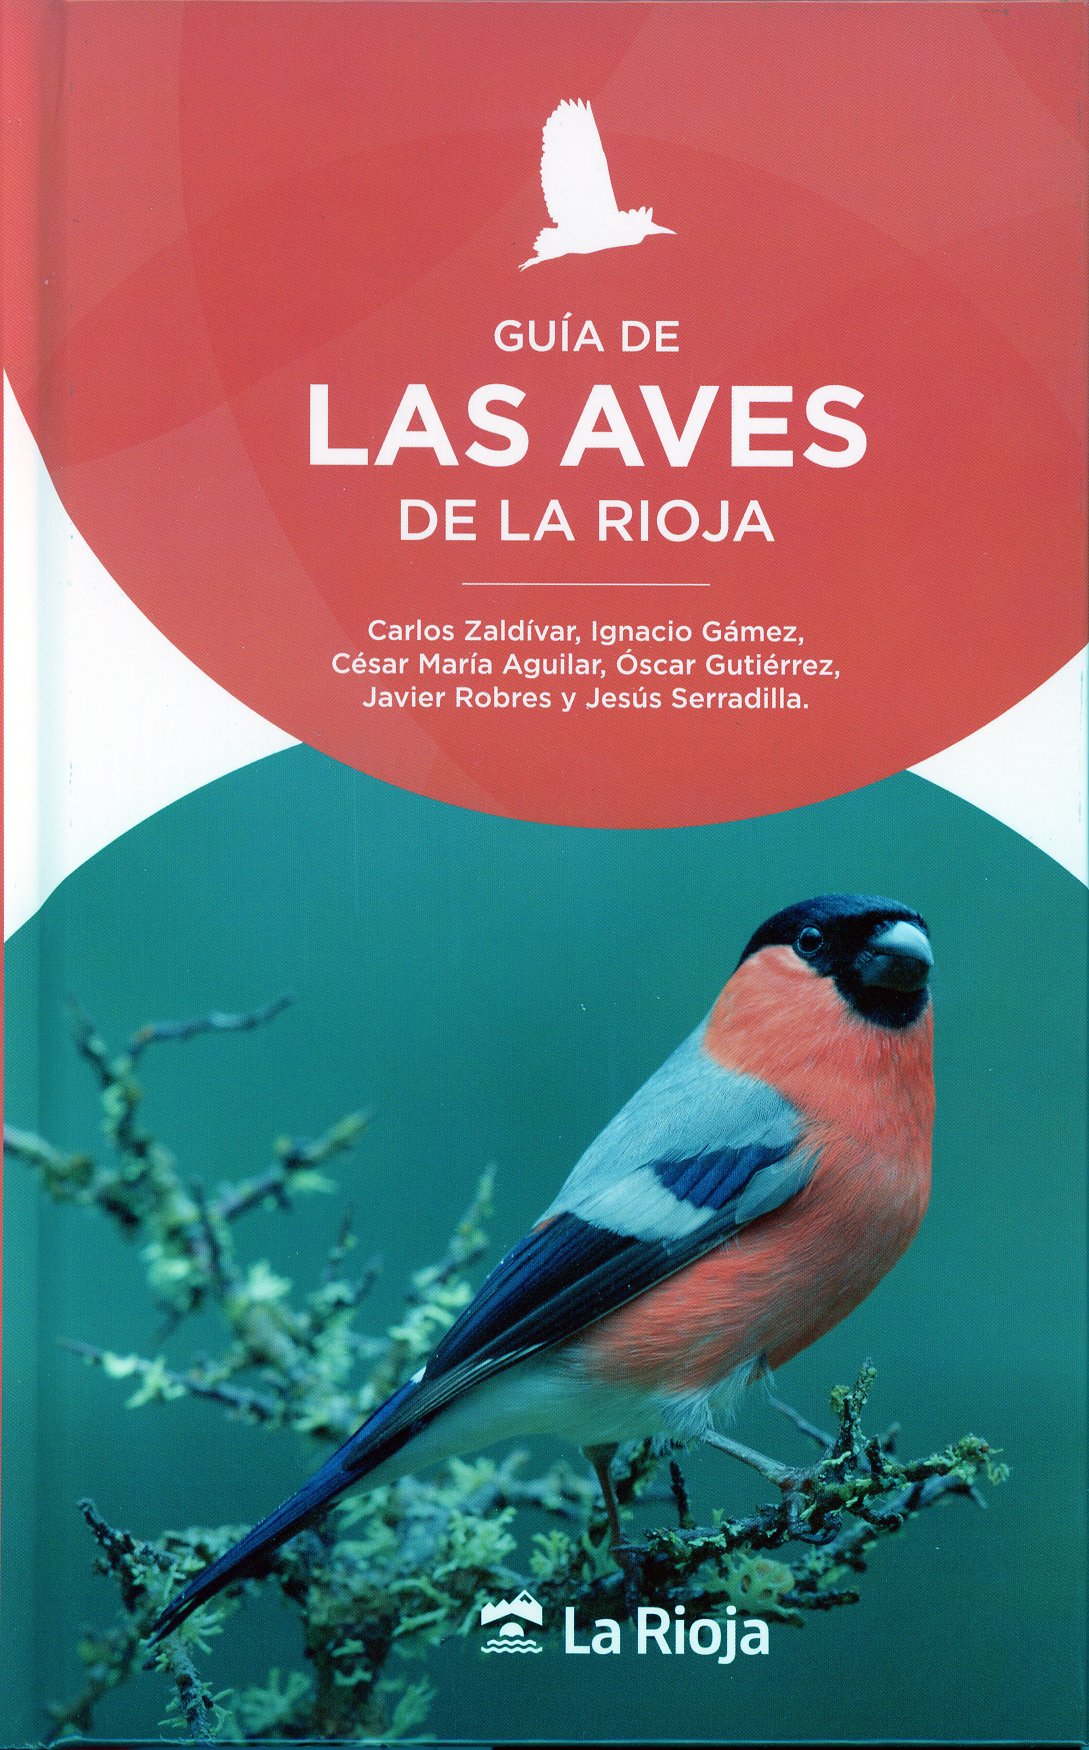 Imagen de portada del libro Guía de las aves de La Rioja